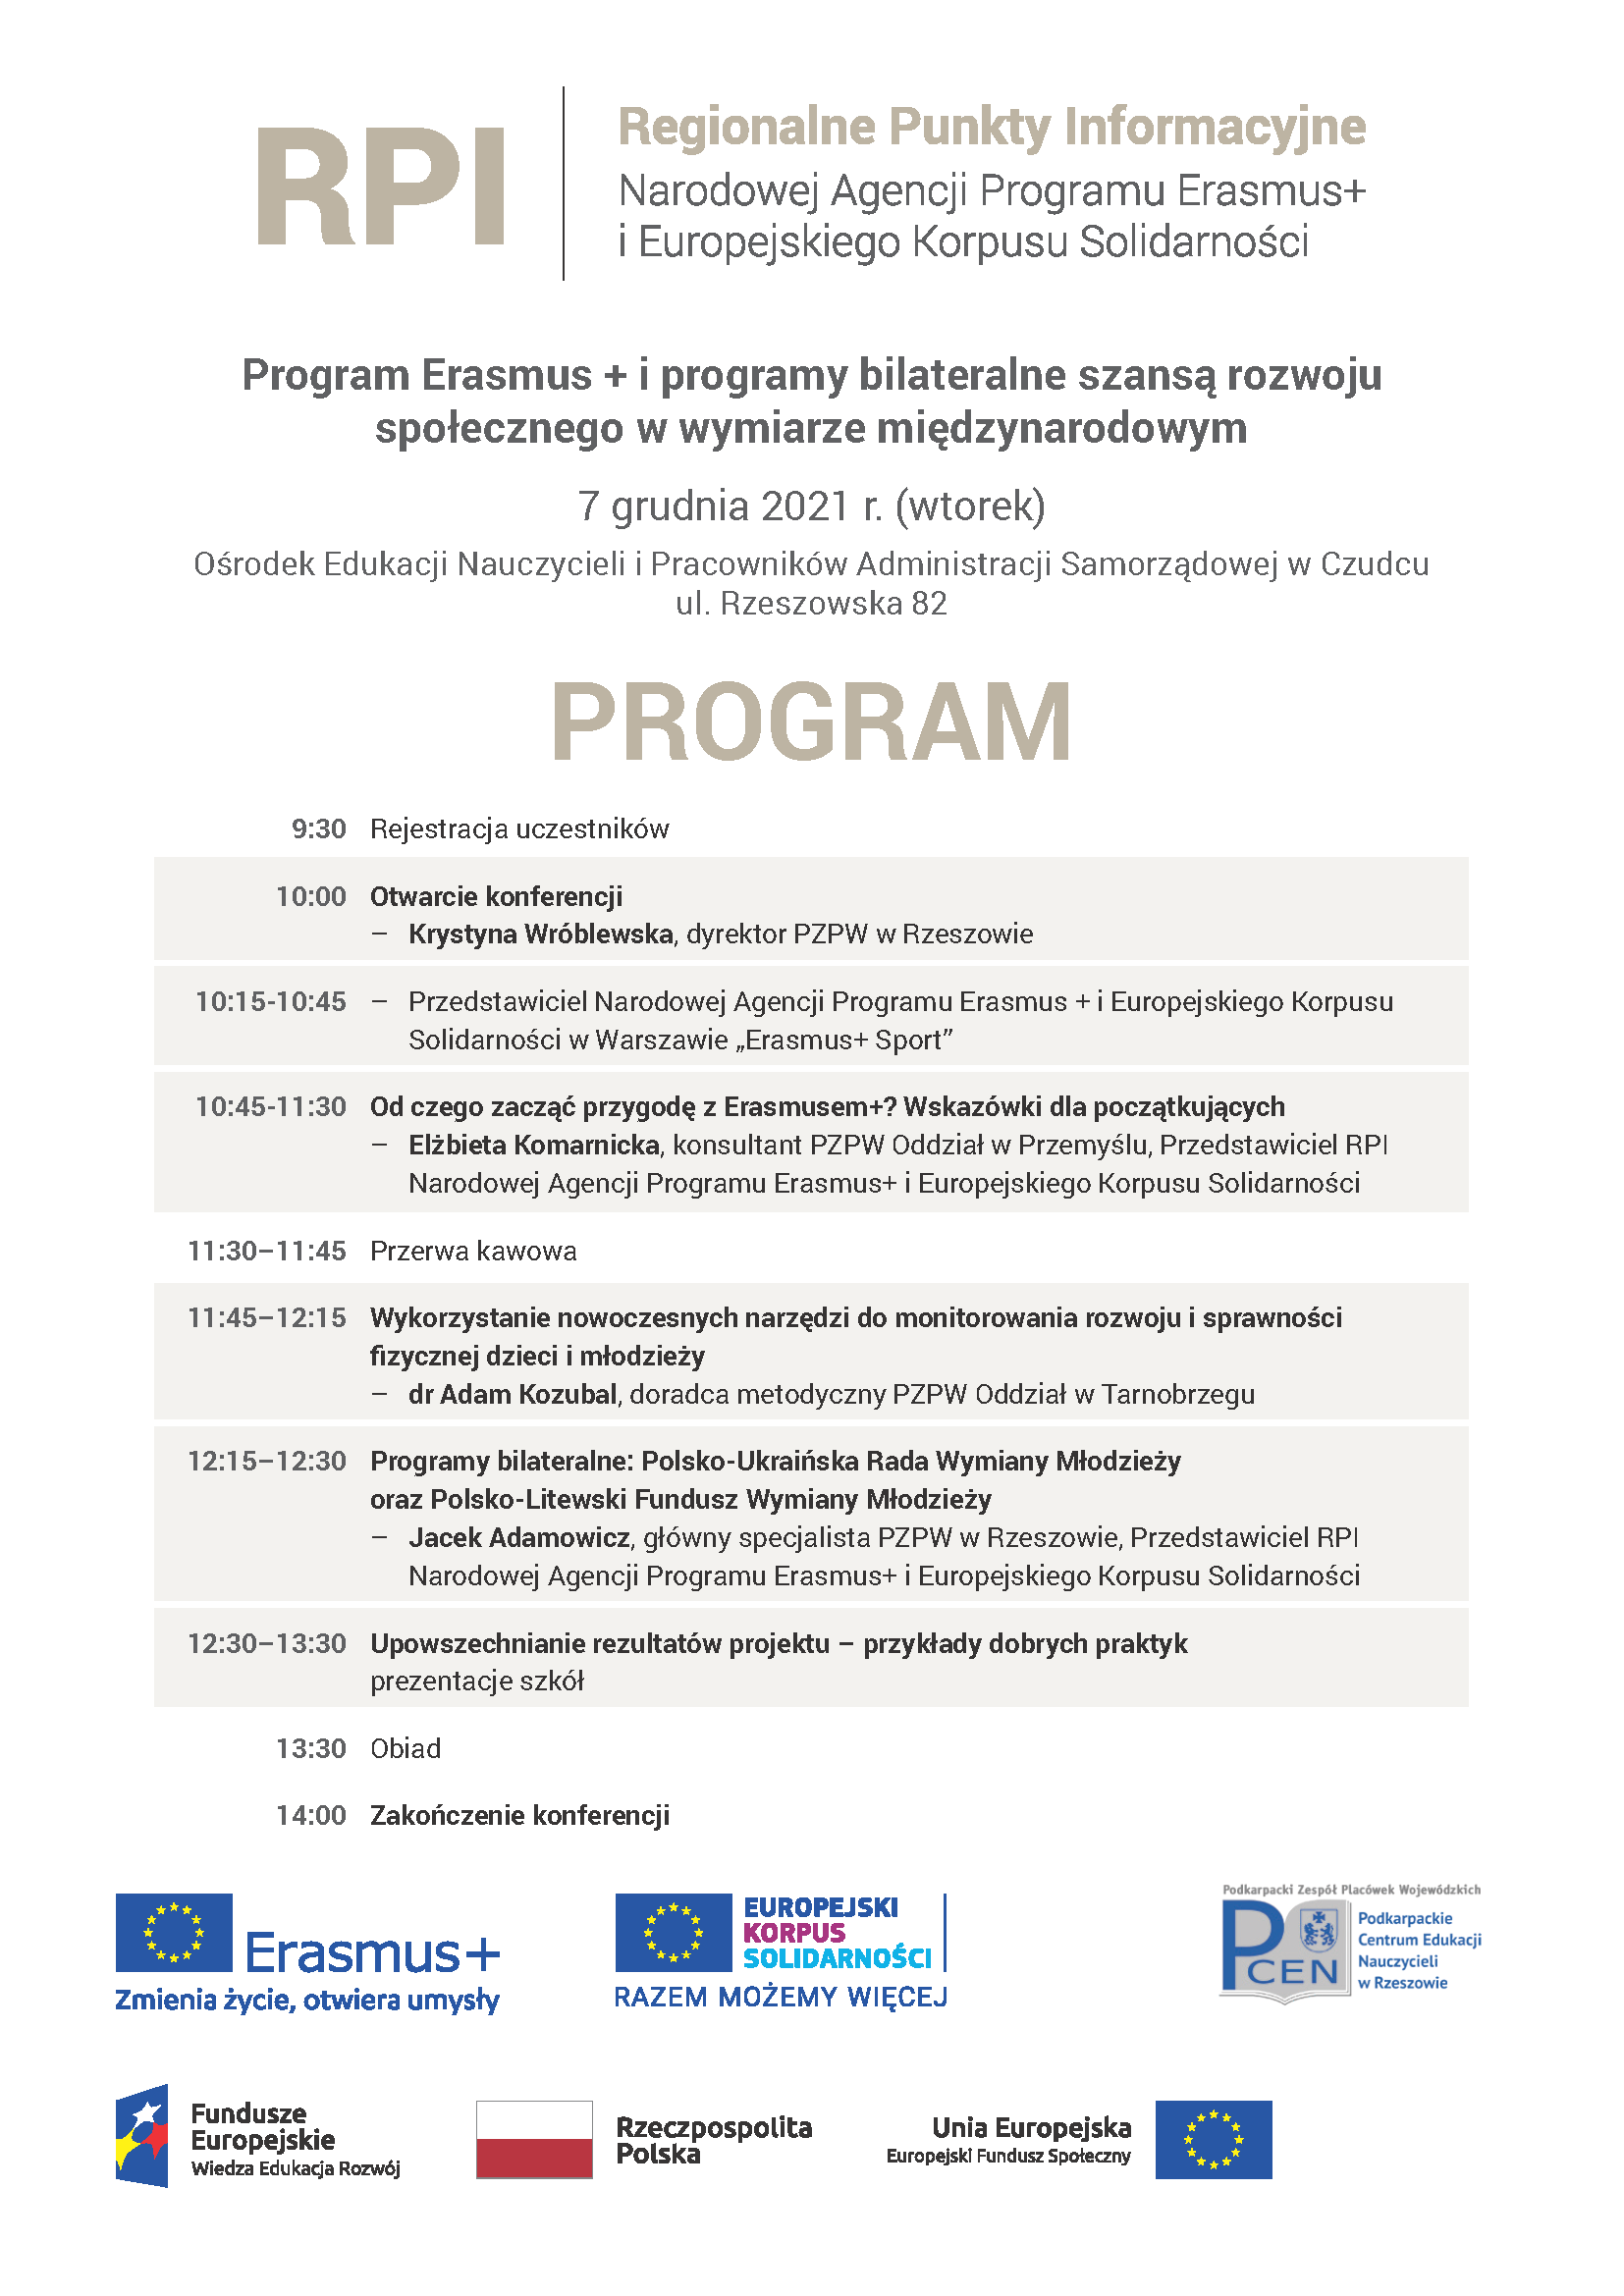 Regionalny Punkt Informacyjny Narodowej Agencji Programu Erasmus+ i Europejskiego Korpusu Solidarności przy PZPW w Rzeszowie zaprasza na konferencję Program Erasmus+ i programy bilateralne szansą rozwoju społecznego w wymiarze międzynarodowym